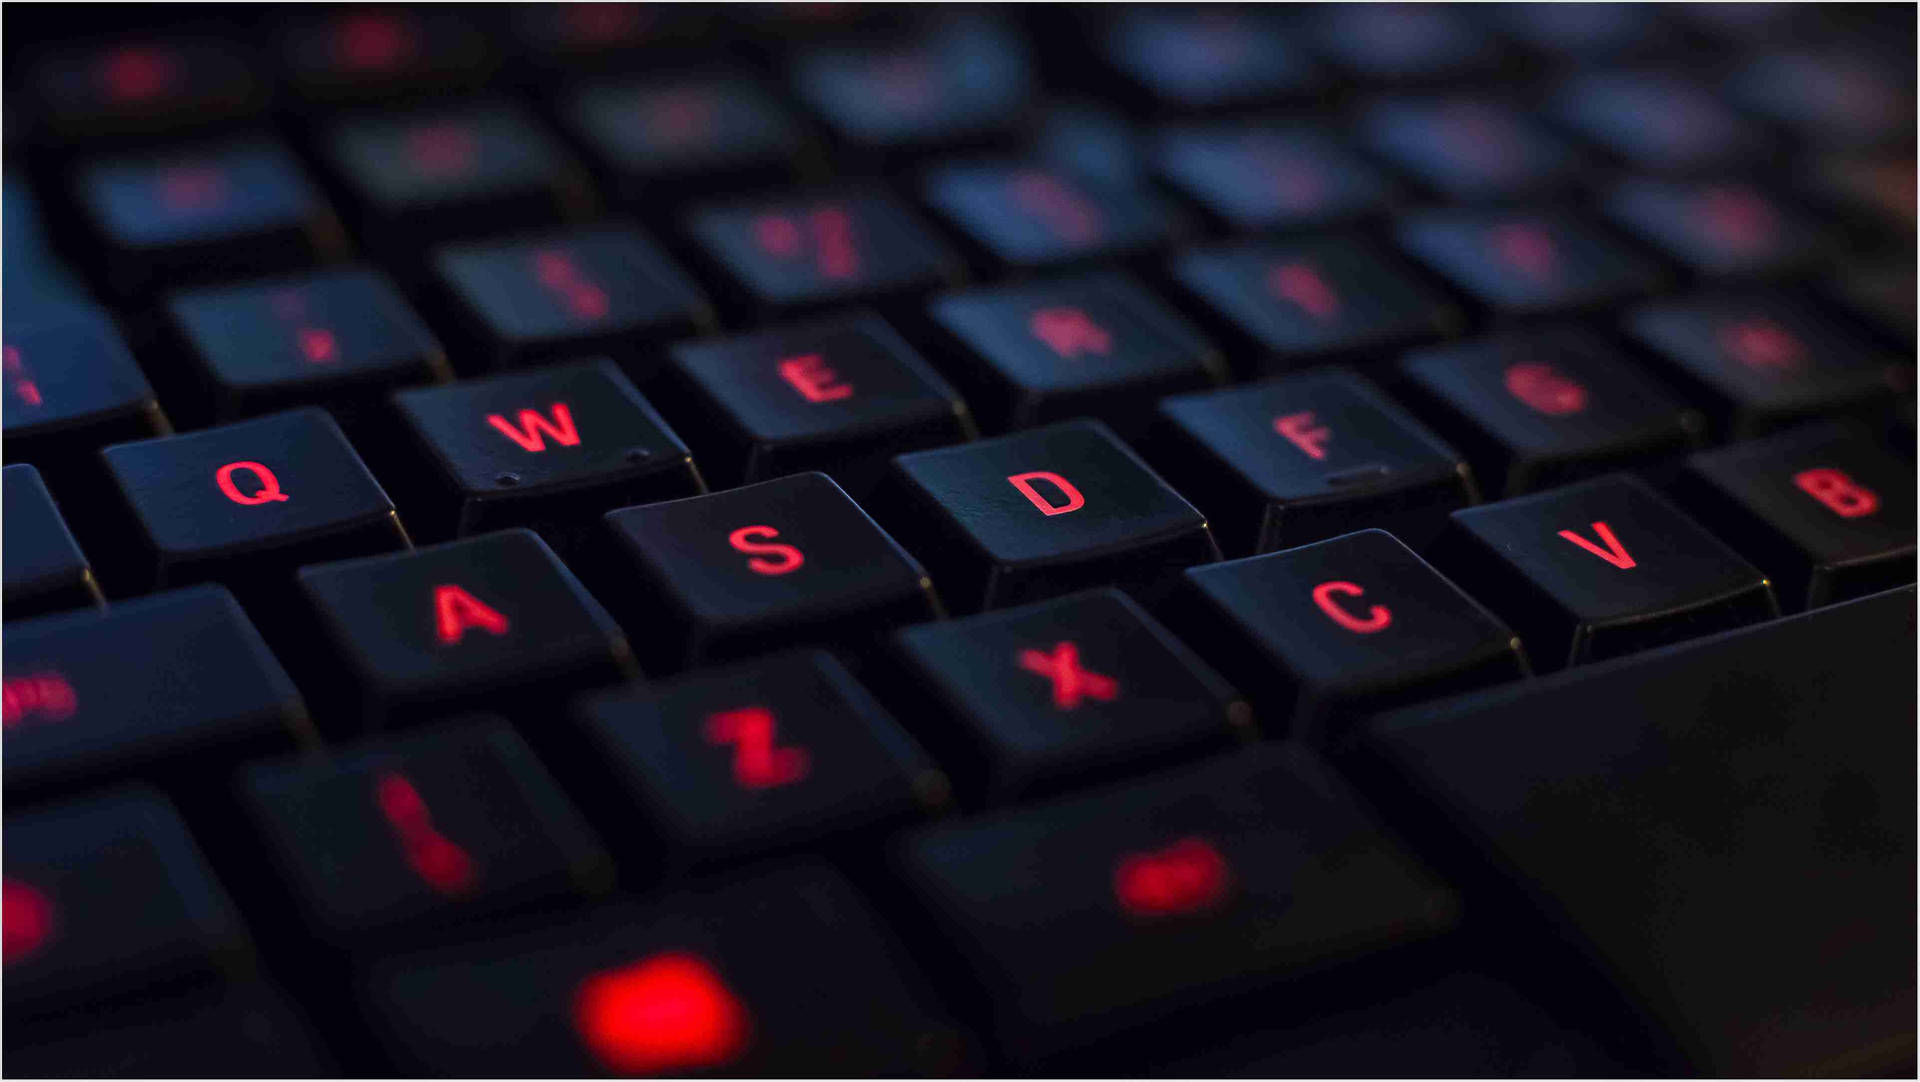 Fiery Red Light Computer Keyboard Wallpaper